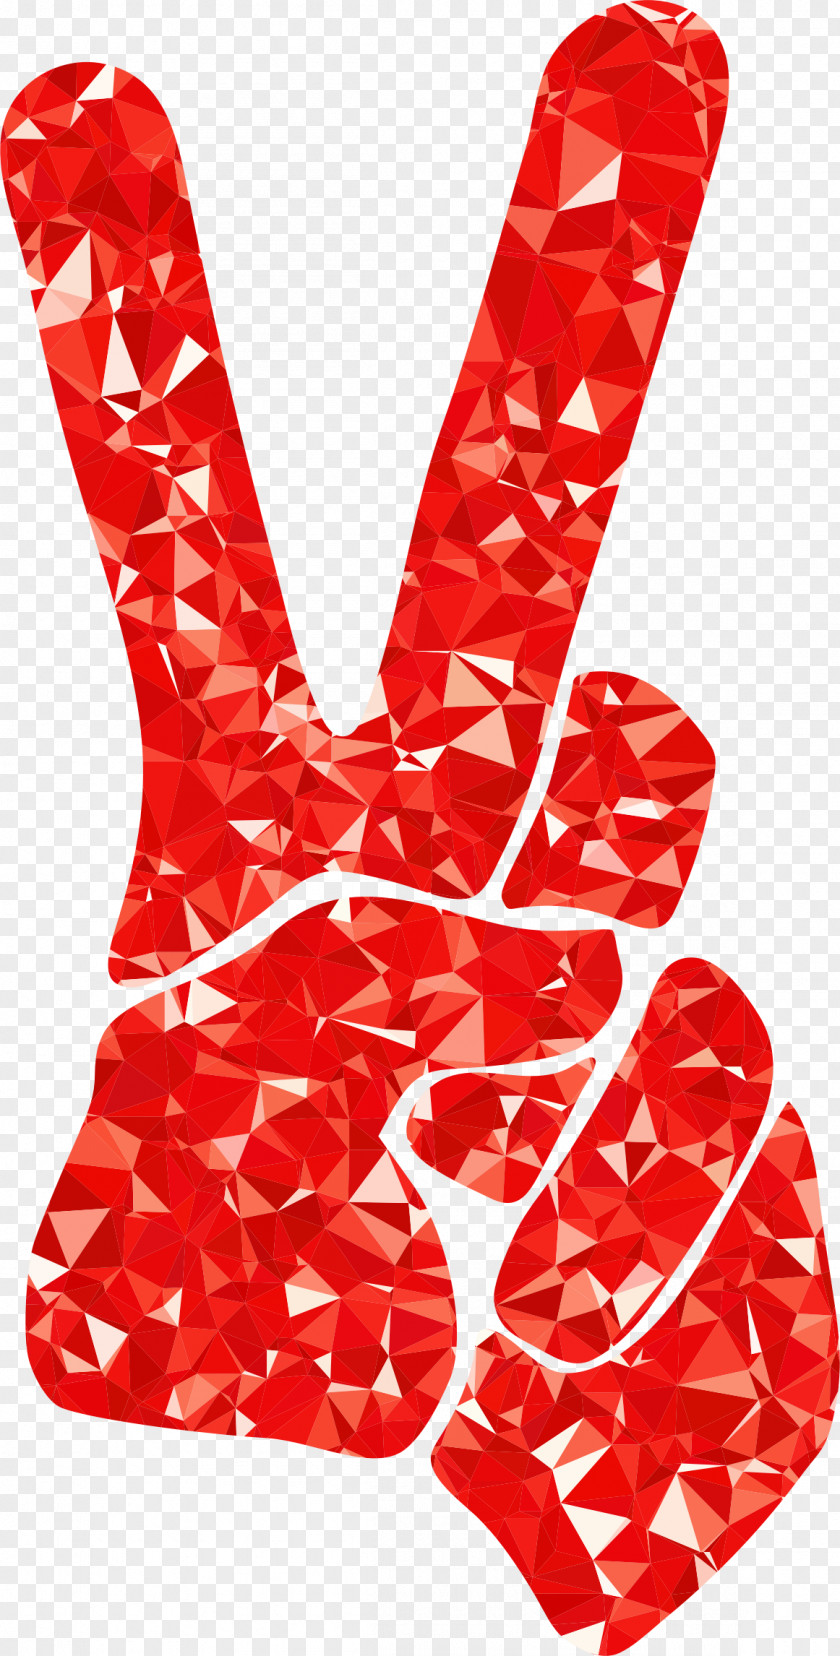 Ruby V Sign Peace Symbols Clip Art PNG